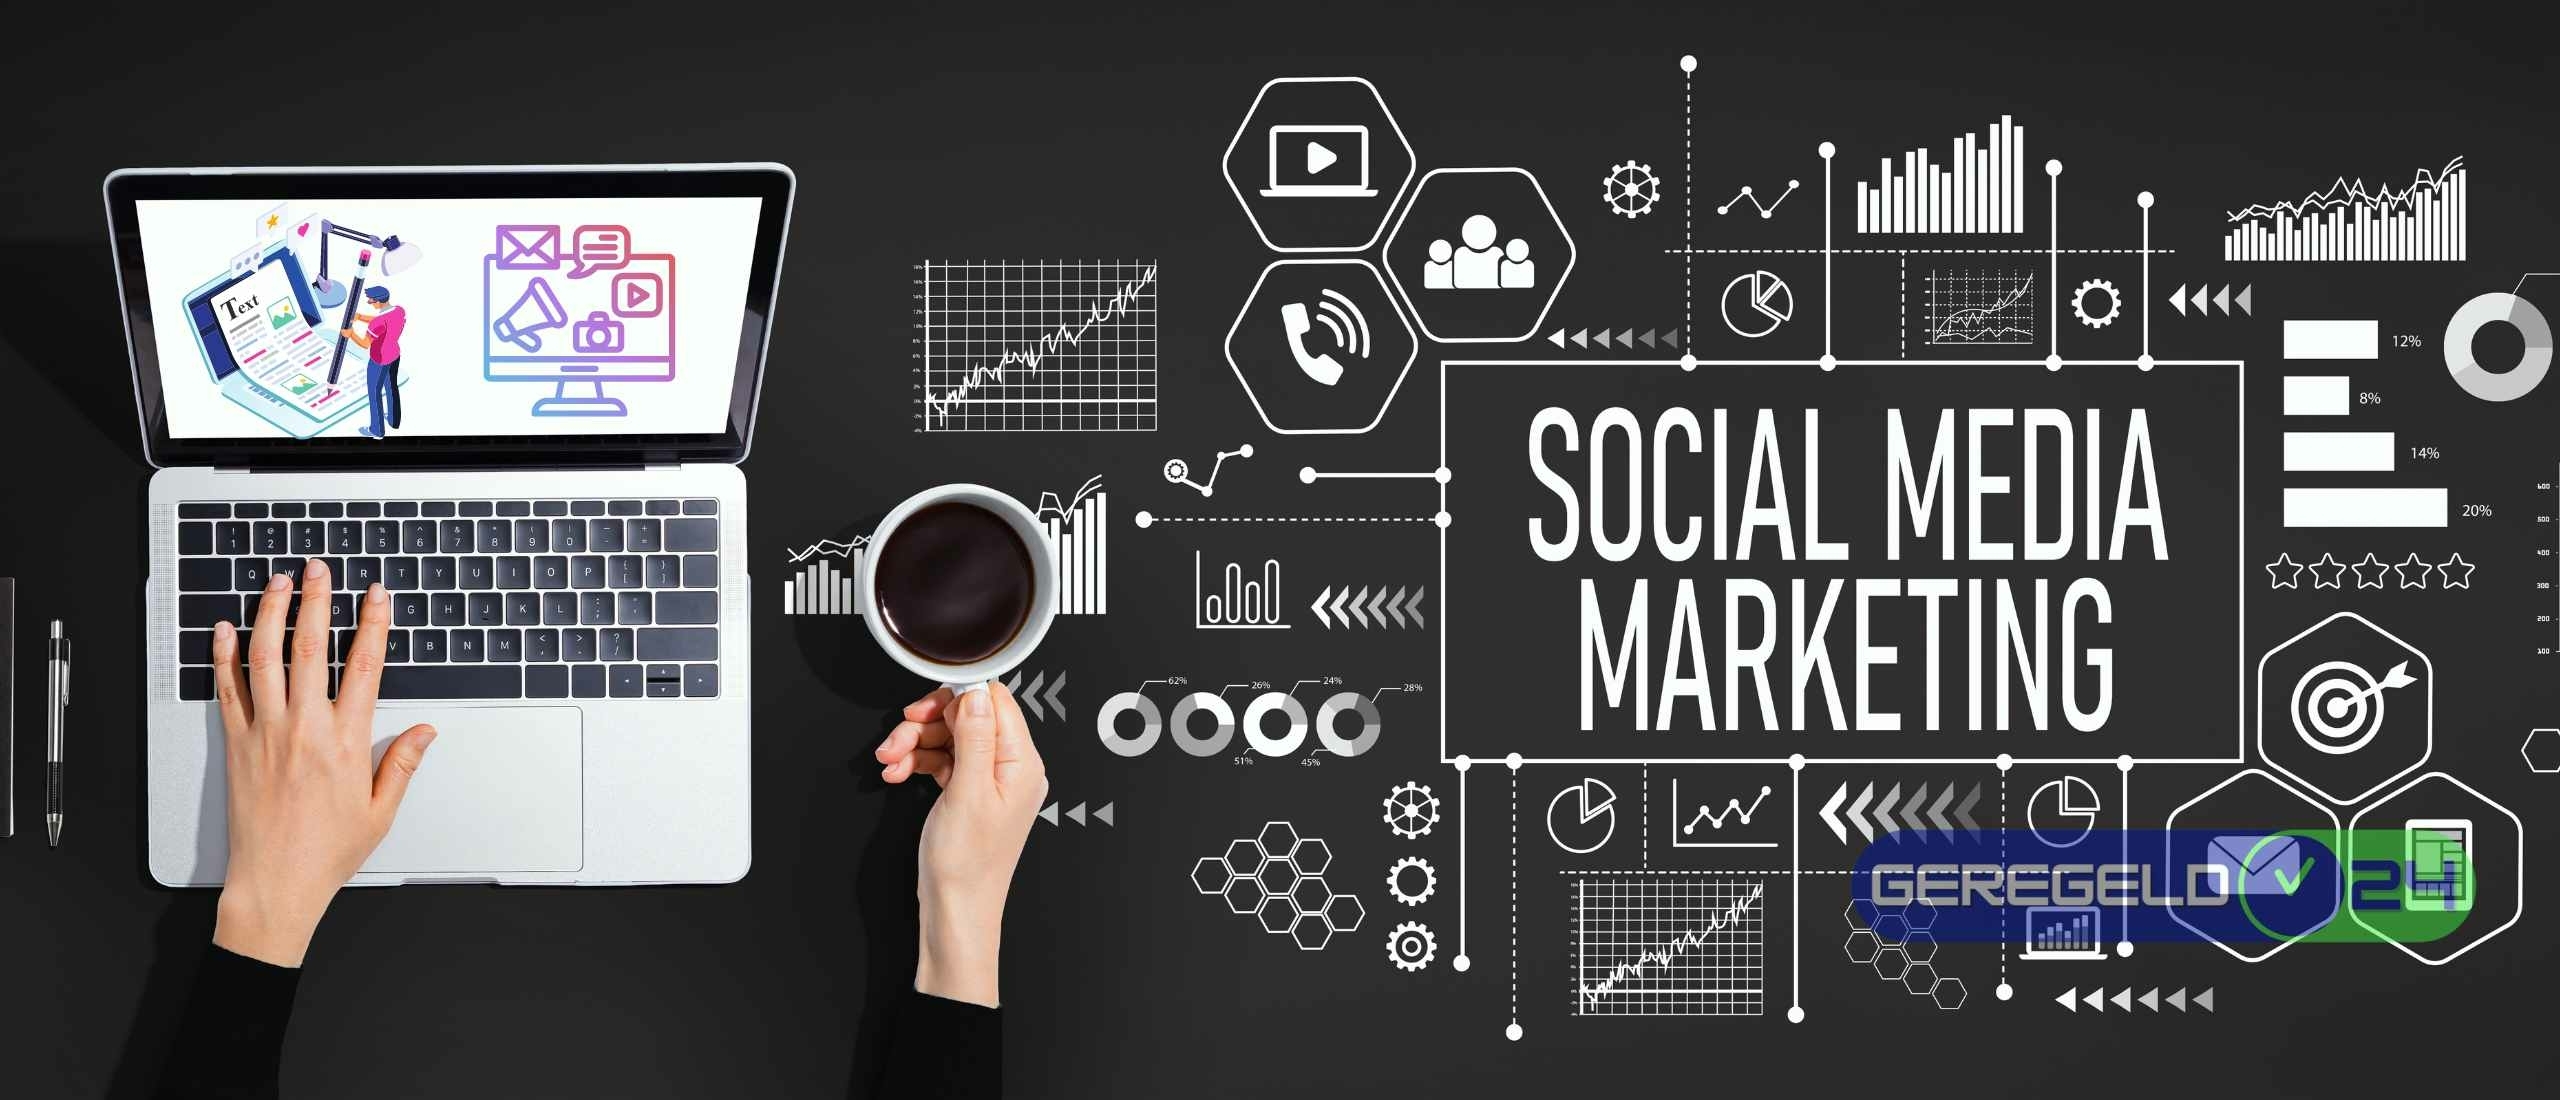 Social media marketing: Voor- en nadelen